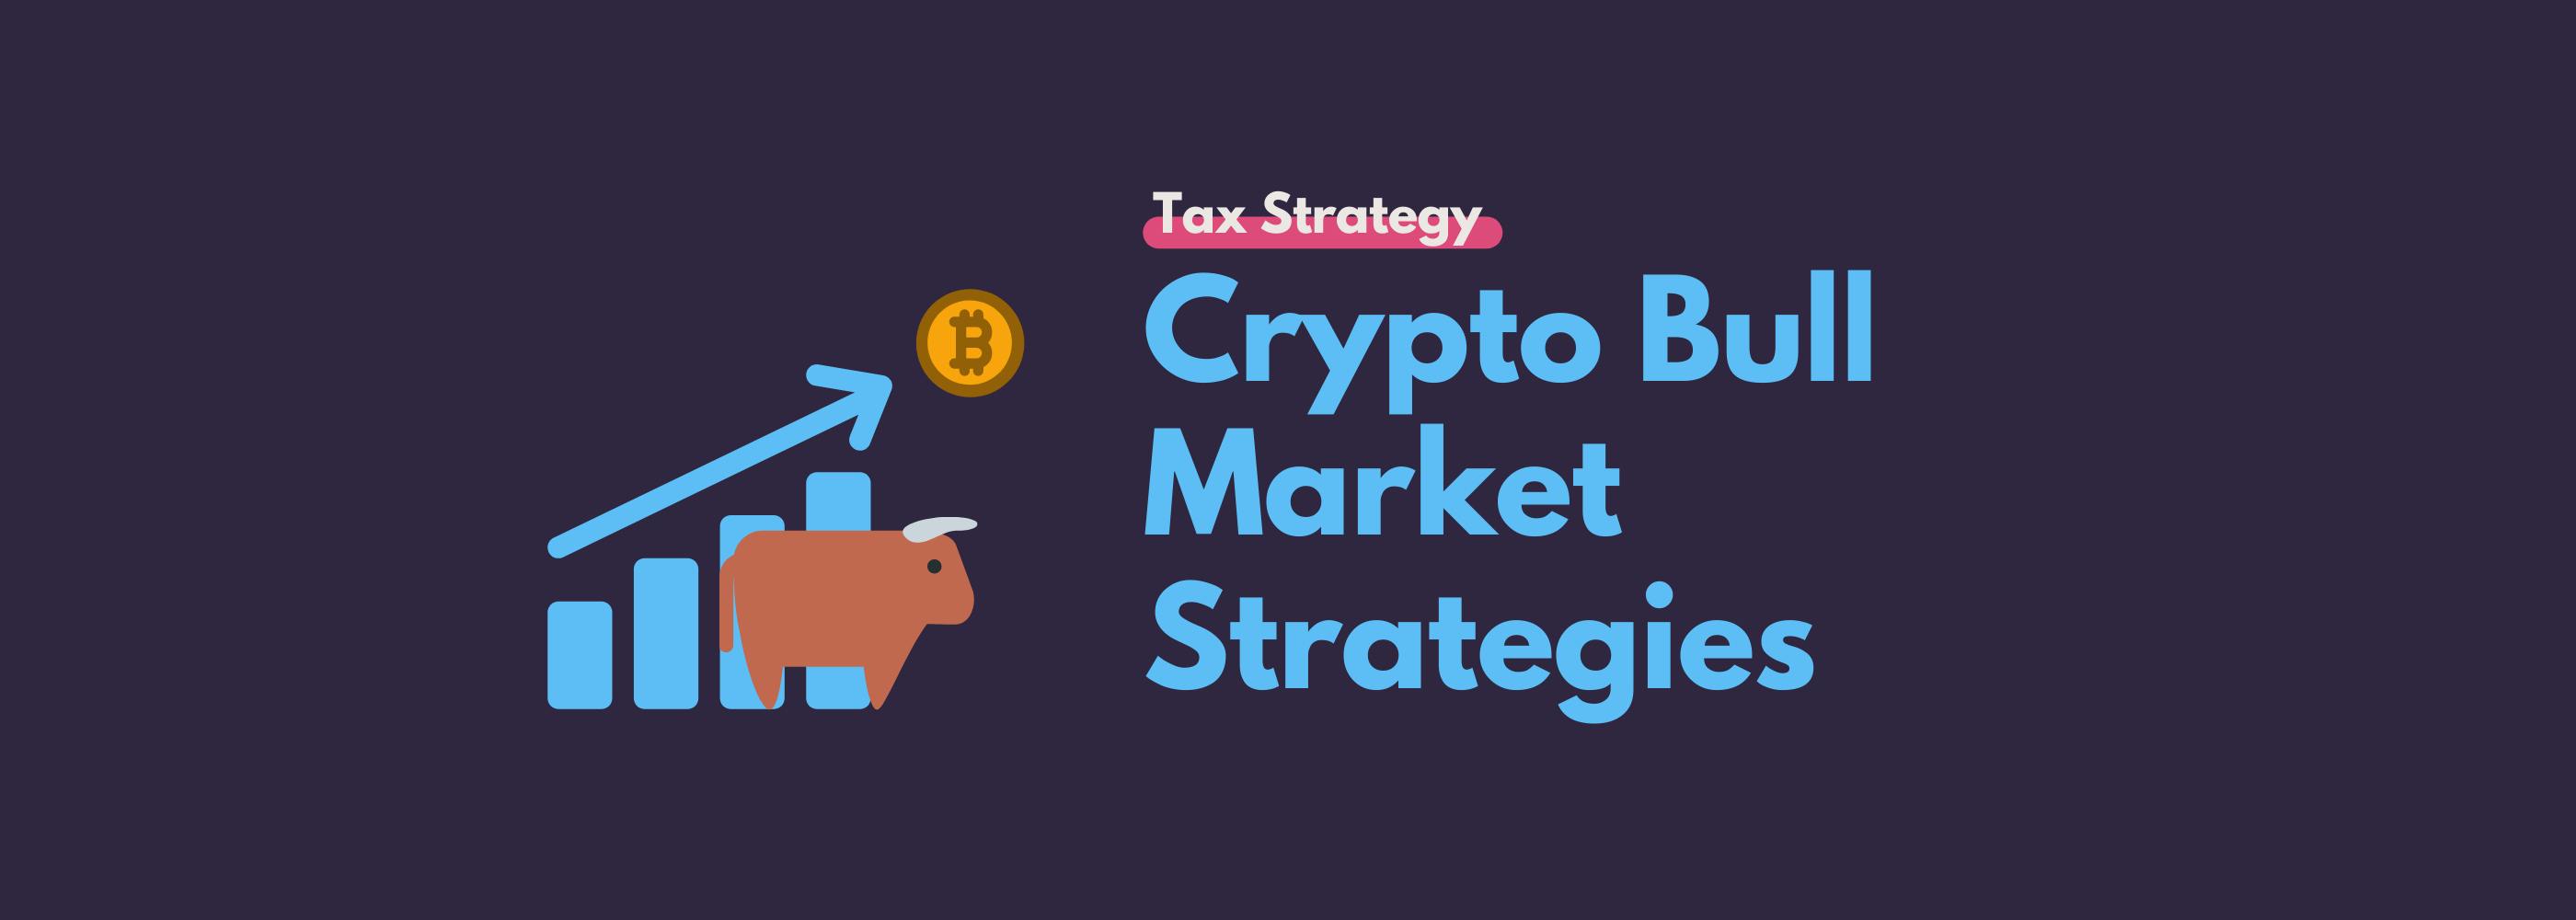 Crypto bull market strategies Koinly